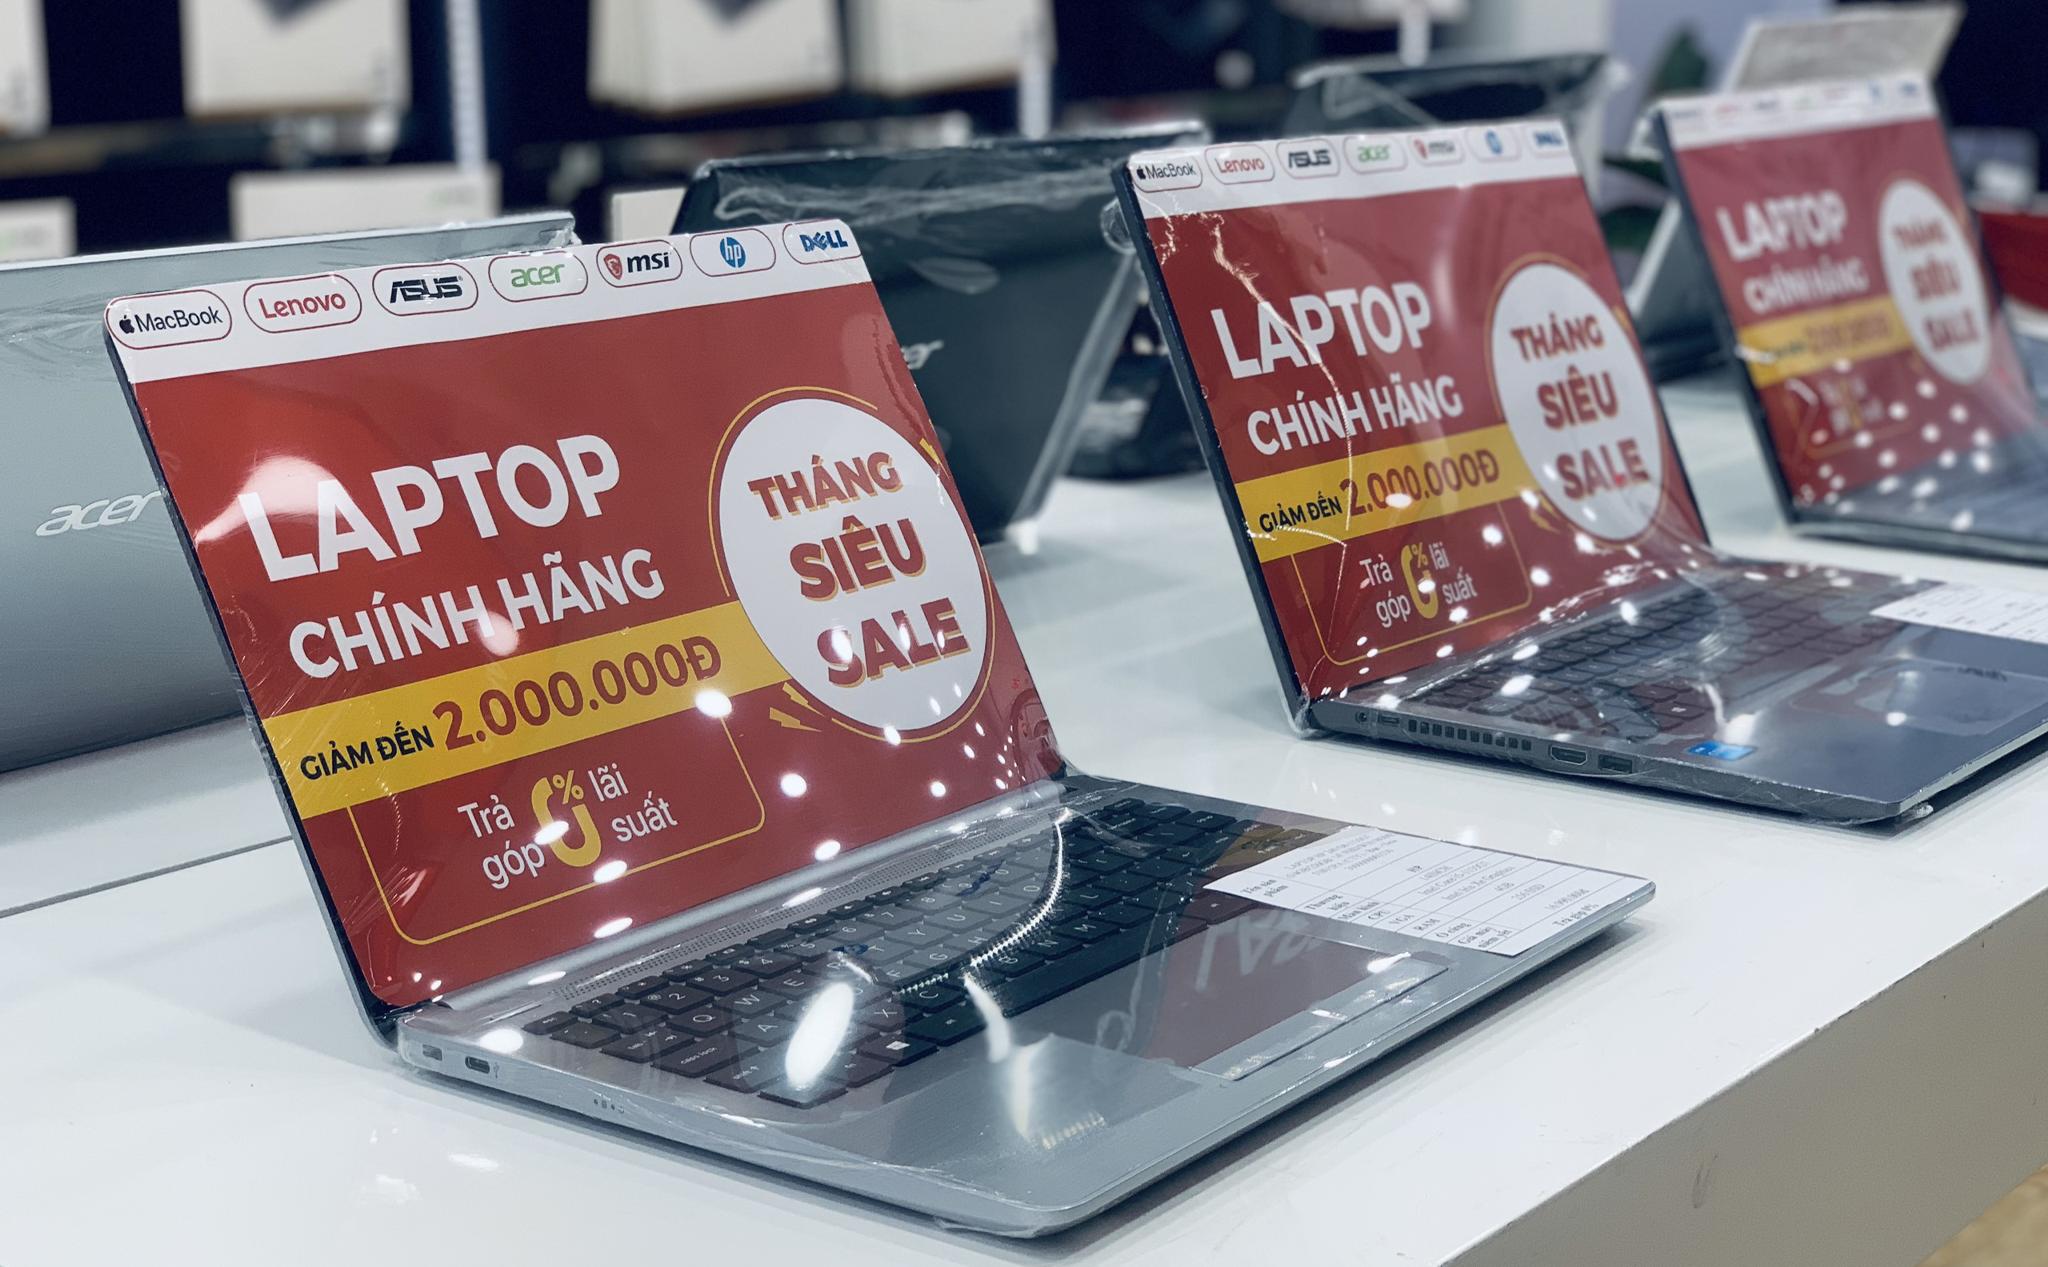 Giá bán nhiều dòng laptop giảm mạnh, có dòng giảm đến 5 triệu đồng ngay đầu tháng 6 này